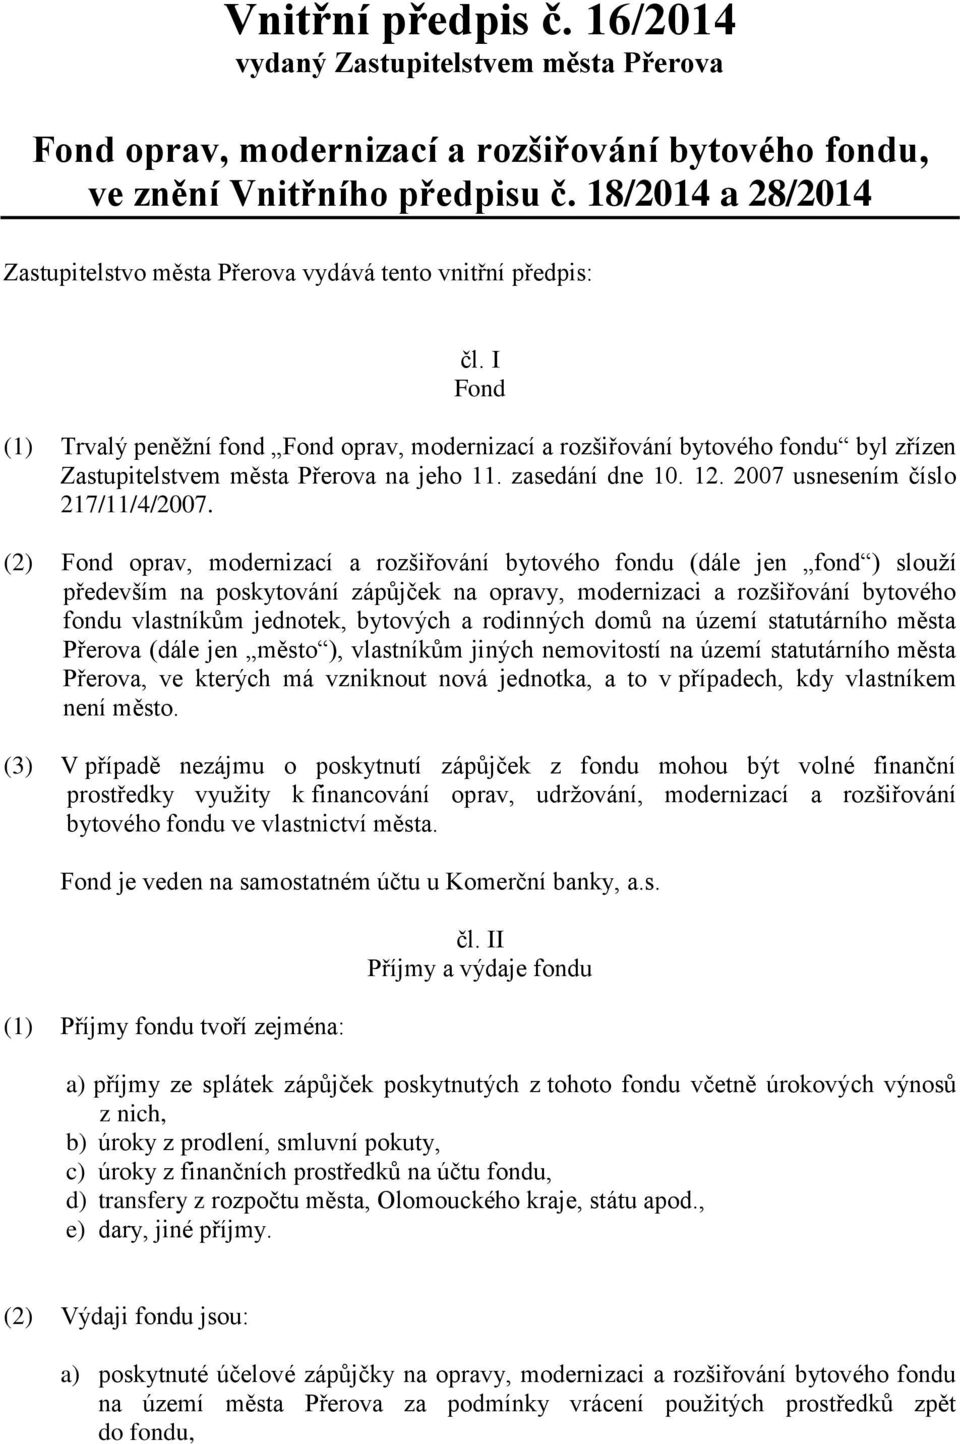 I Fond (1) Trvalý peněžní fond Fond oprav, modernizací a rozšiřování bytového fondu byl zřízen Zastupitelstvem města Přerova na jeho 11. zasedání dne 10. 12. 2007 usnesením číslo 217/11/4/2007.